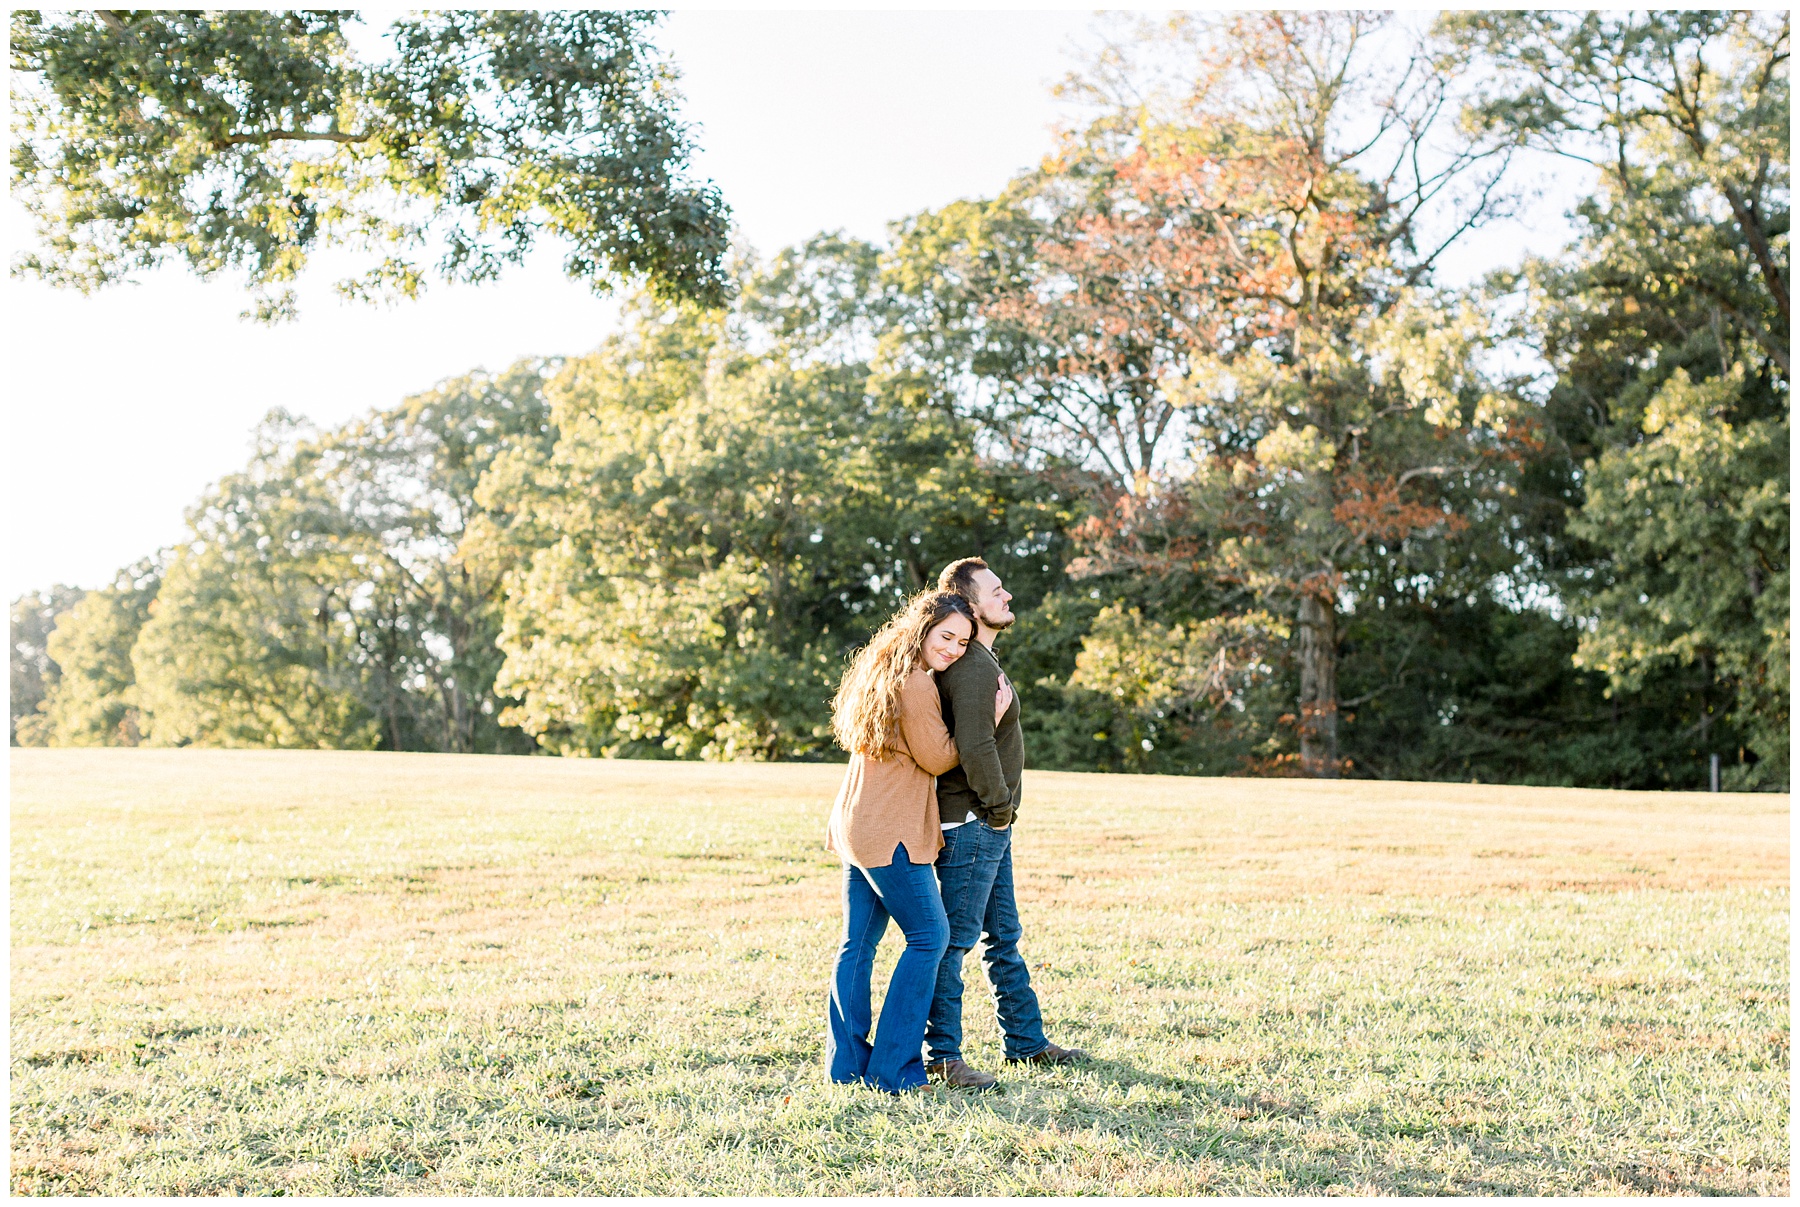 Summerfield Farm Engagement Session. North Carolina Wedding Photographer. Amanda Eloise Photography